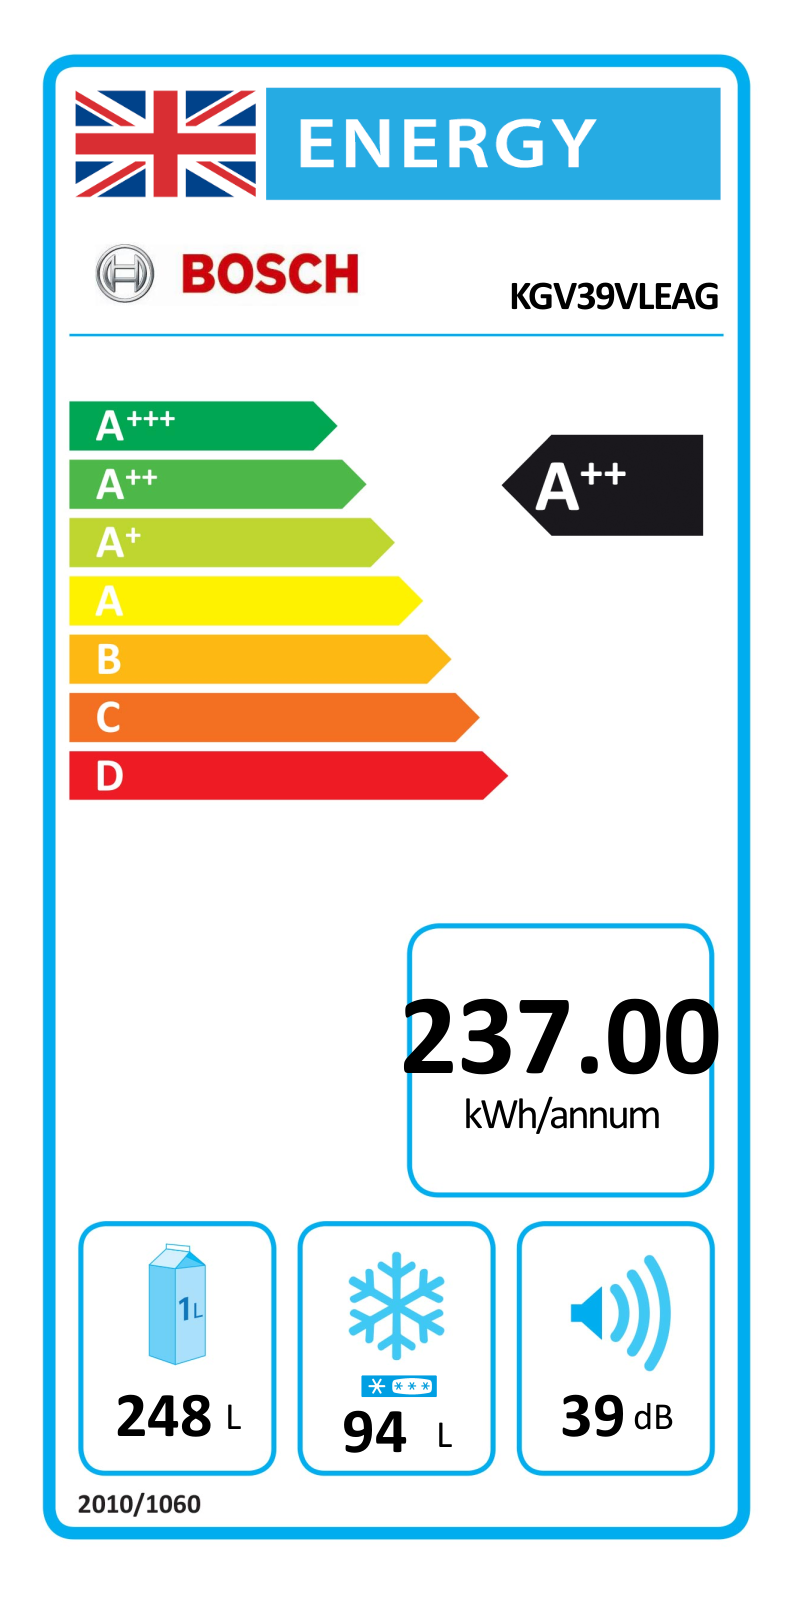 Bosch KGV39VLEAG EU Energy Label